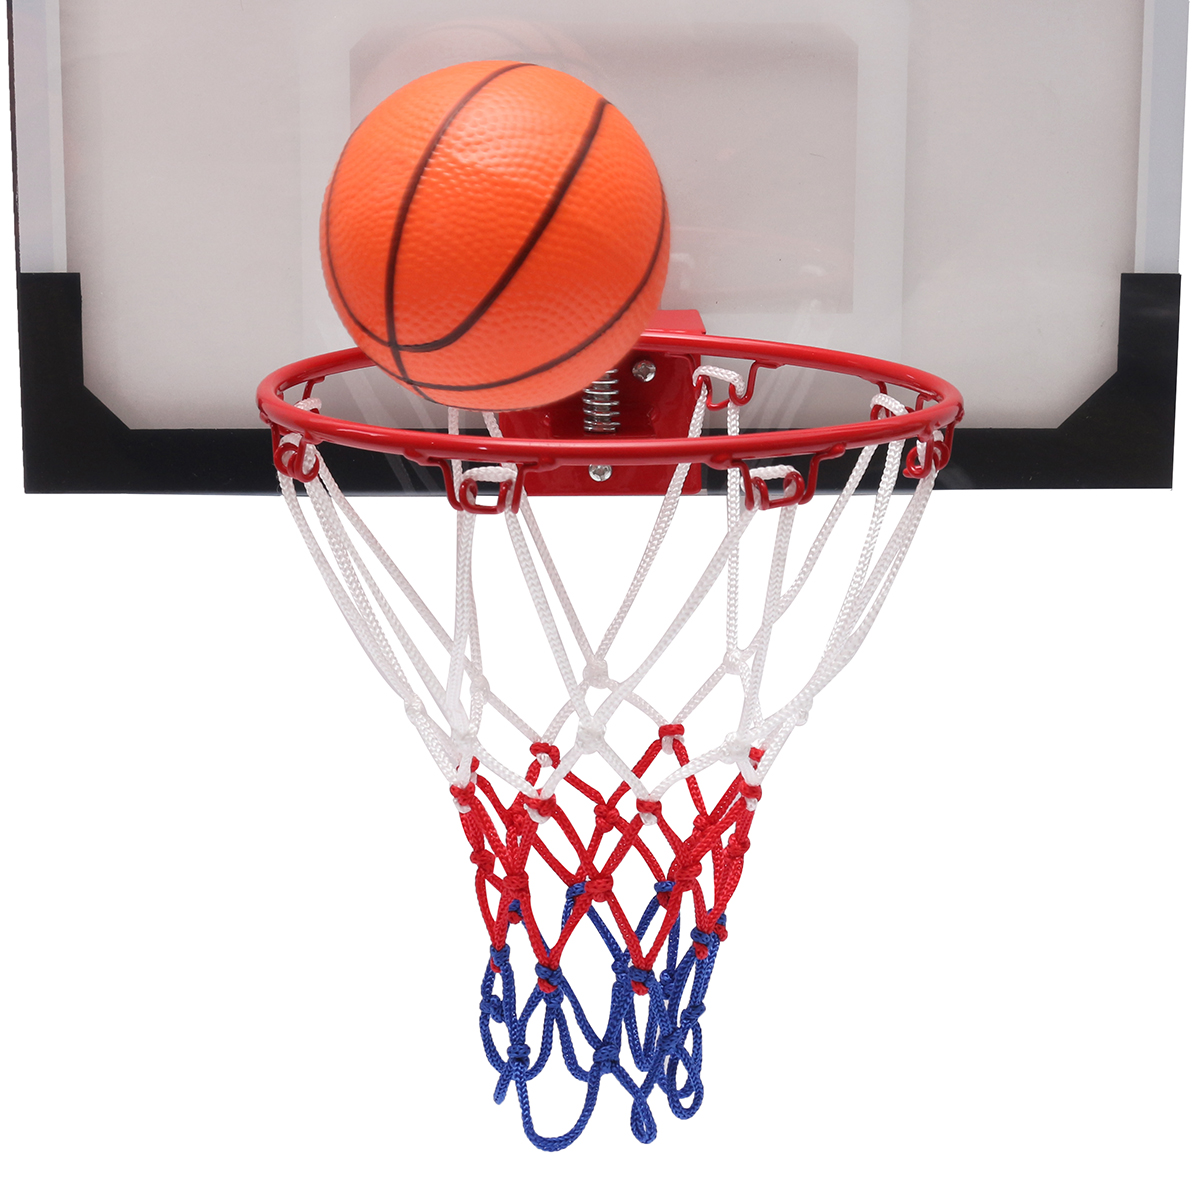 Mini-Basketball-Set-Indoor-Net-Hoop-with-Ball-Pump-Indoor-Sporting-Game-Goods-1204255